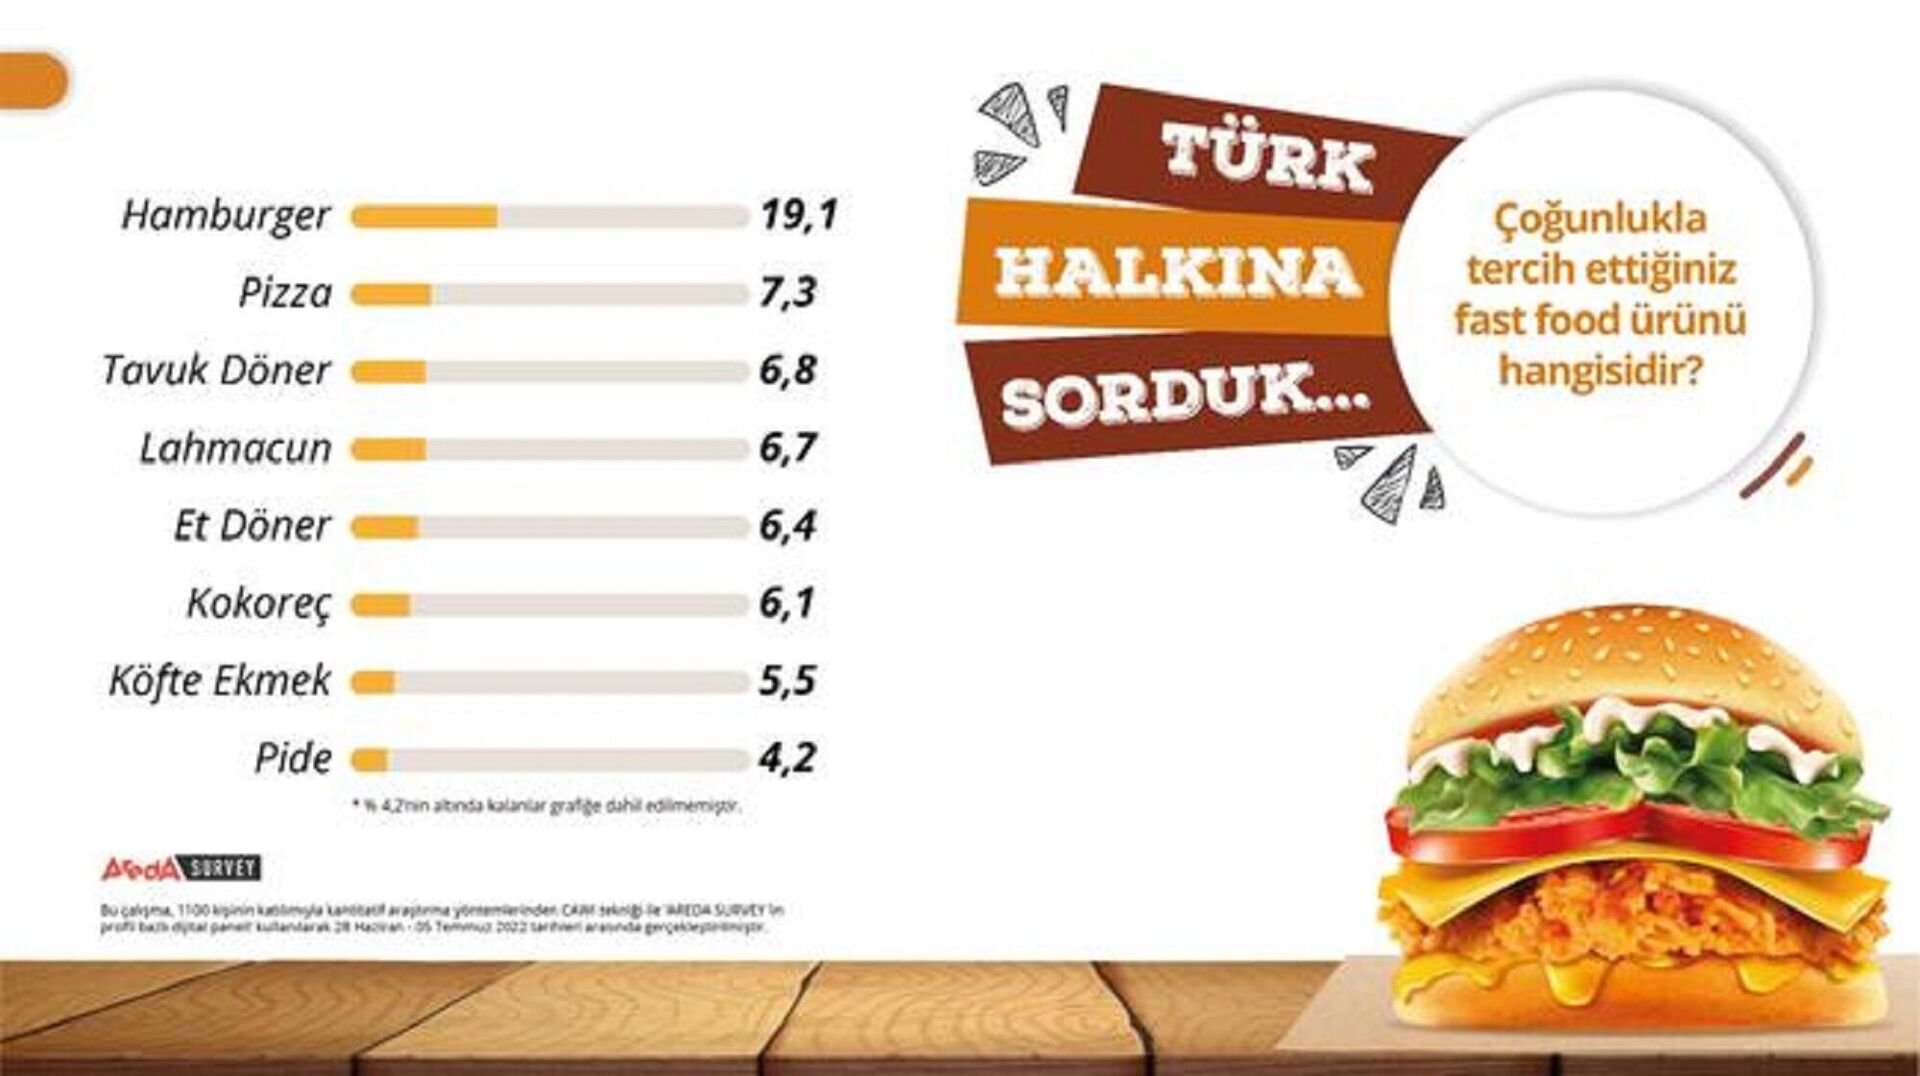 Areda Piar’ın bin 100 katılımcıyla gerçekleştirdiği fast food ürünleri yeme alışkanlıklarına ilişkin araştırmanın sonuçları - Sputnik Türkiye, 1920, 20.07.2022